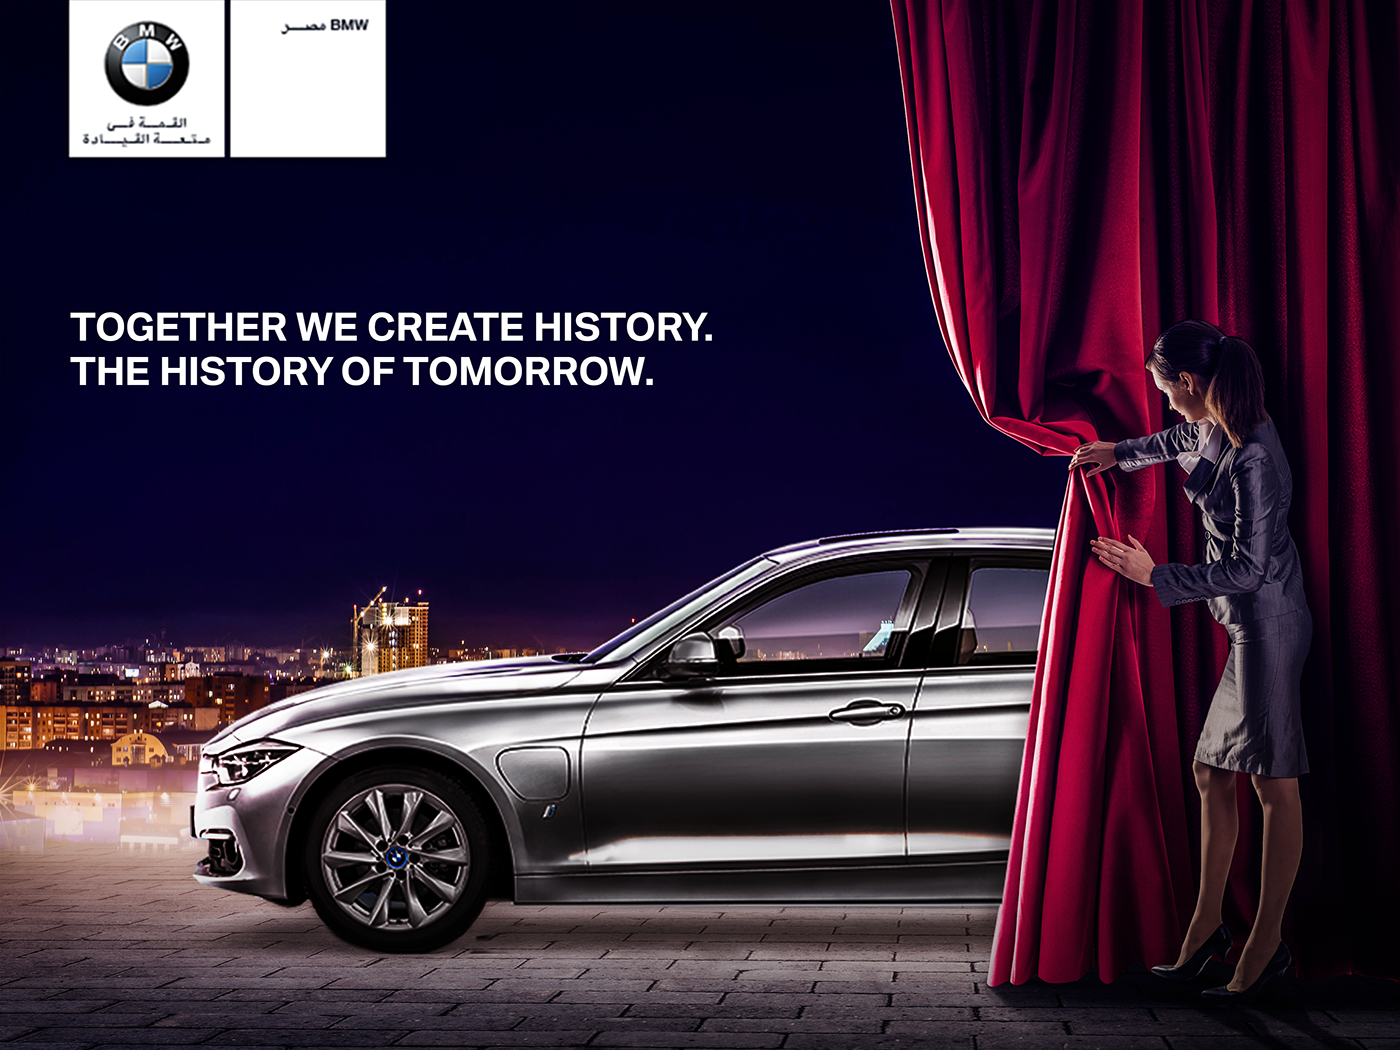 Реклама автомобилей слоганы. Реклама на машине. Печатная реклама автомобилей. Слоганы машин. Рекламный плакат BMW.